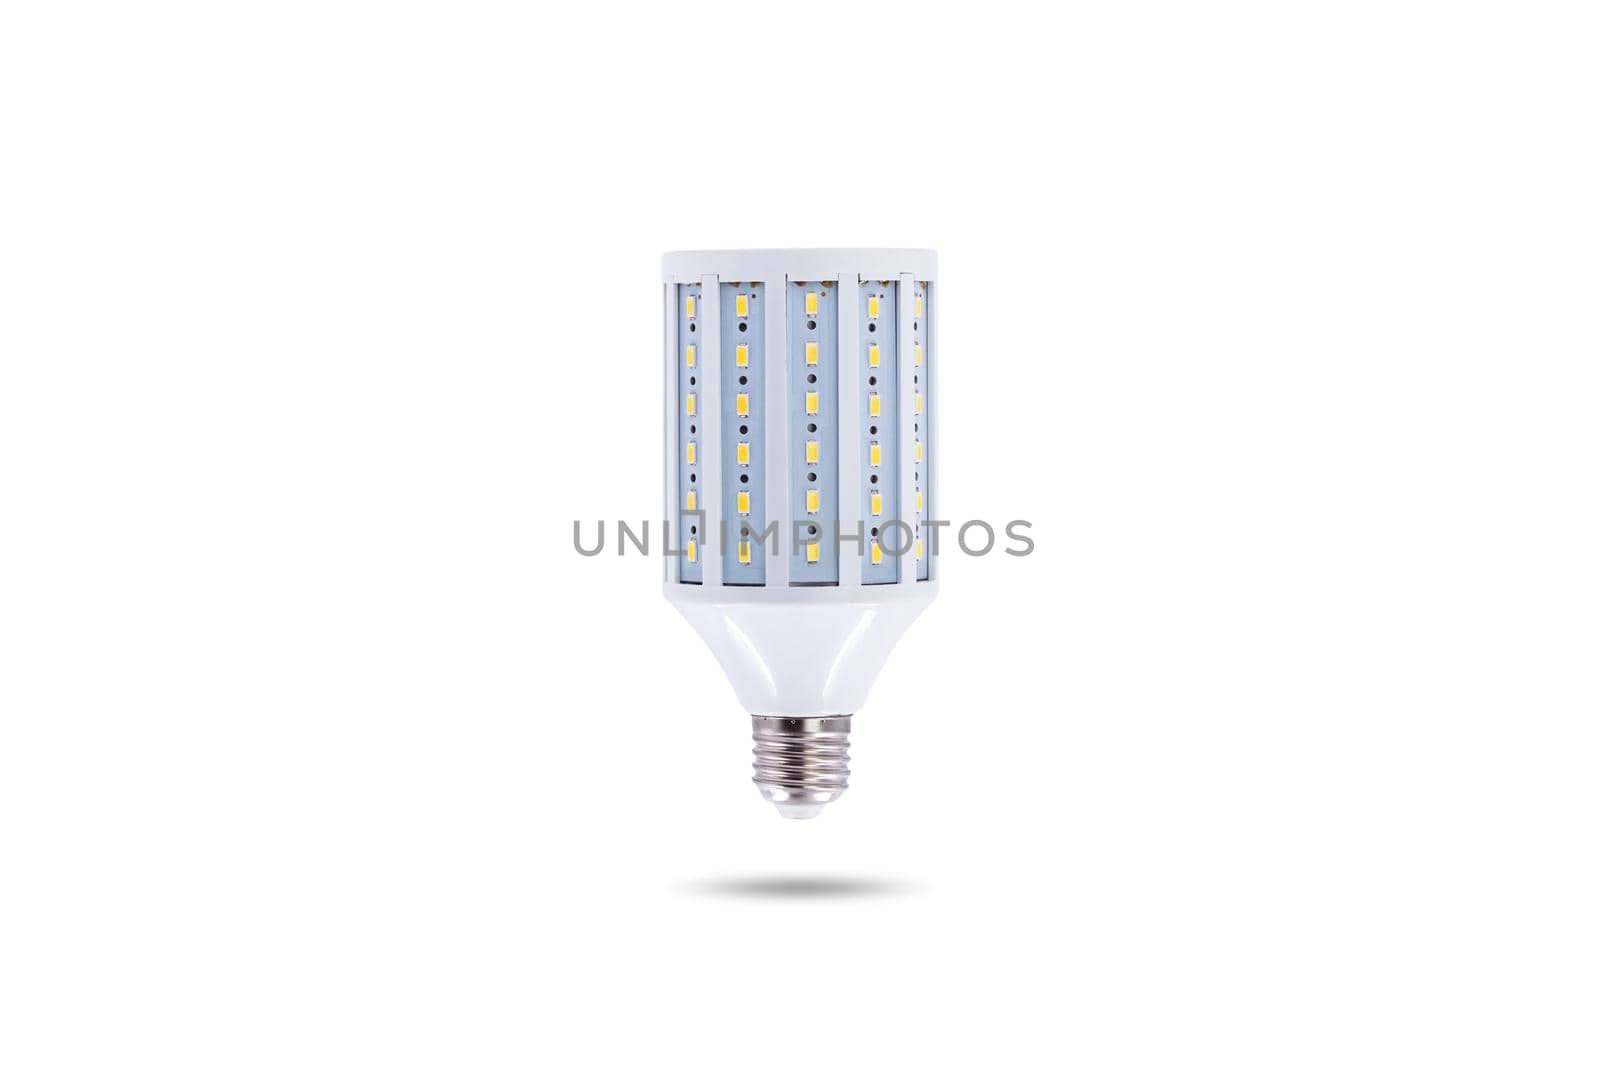 LED energy-saving lamp, screw cap E27 230v isolated on white background.